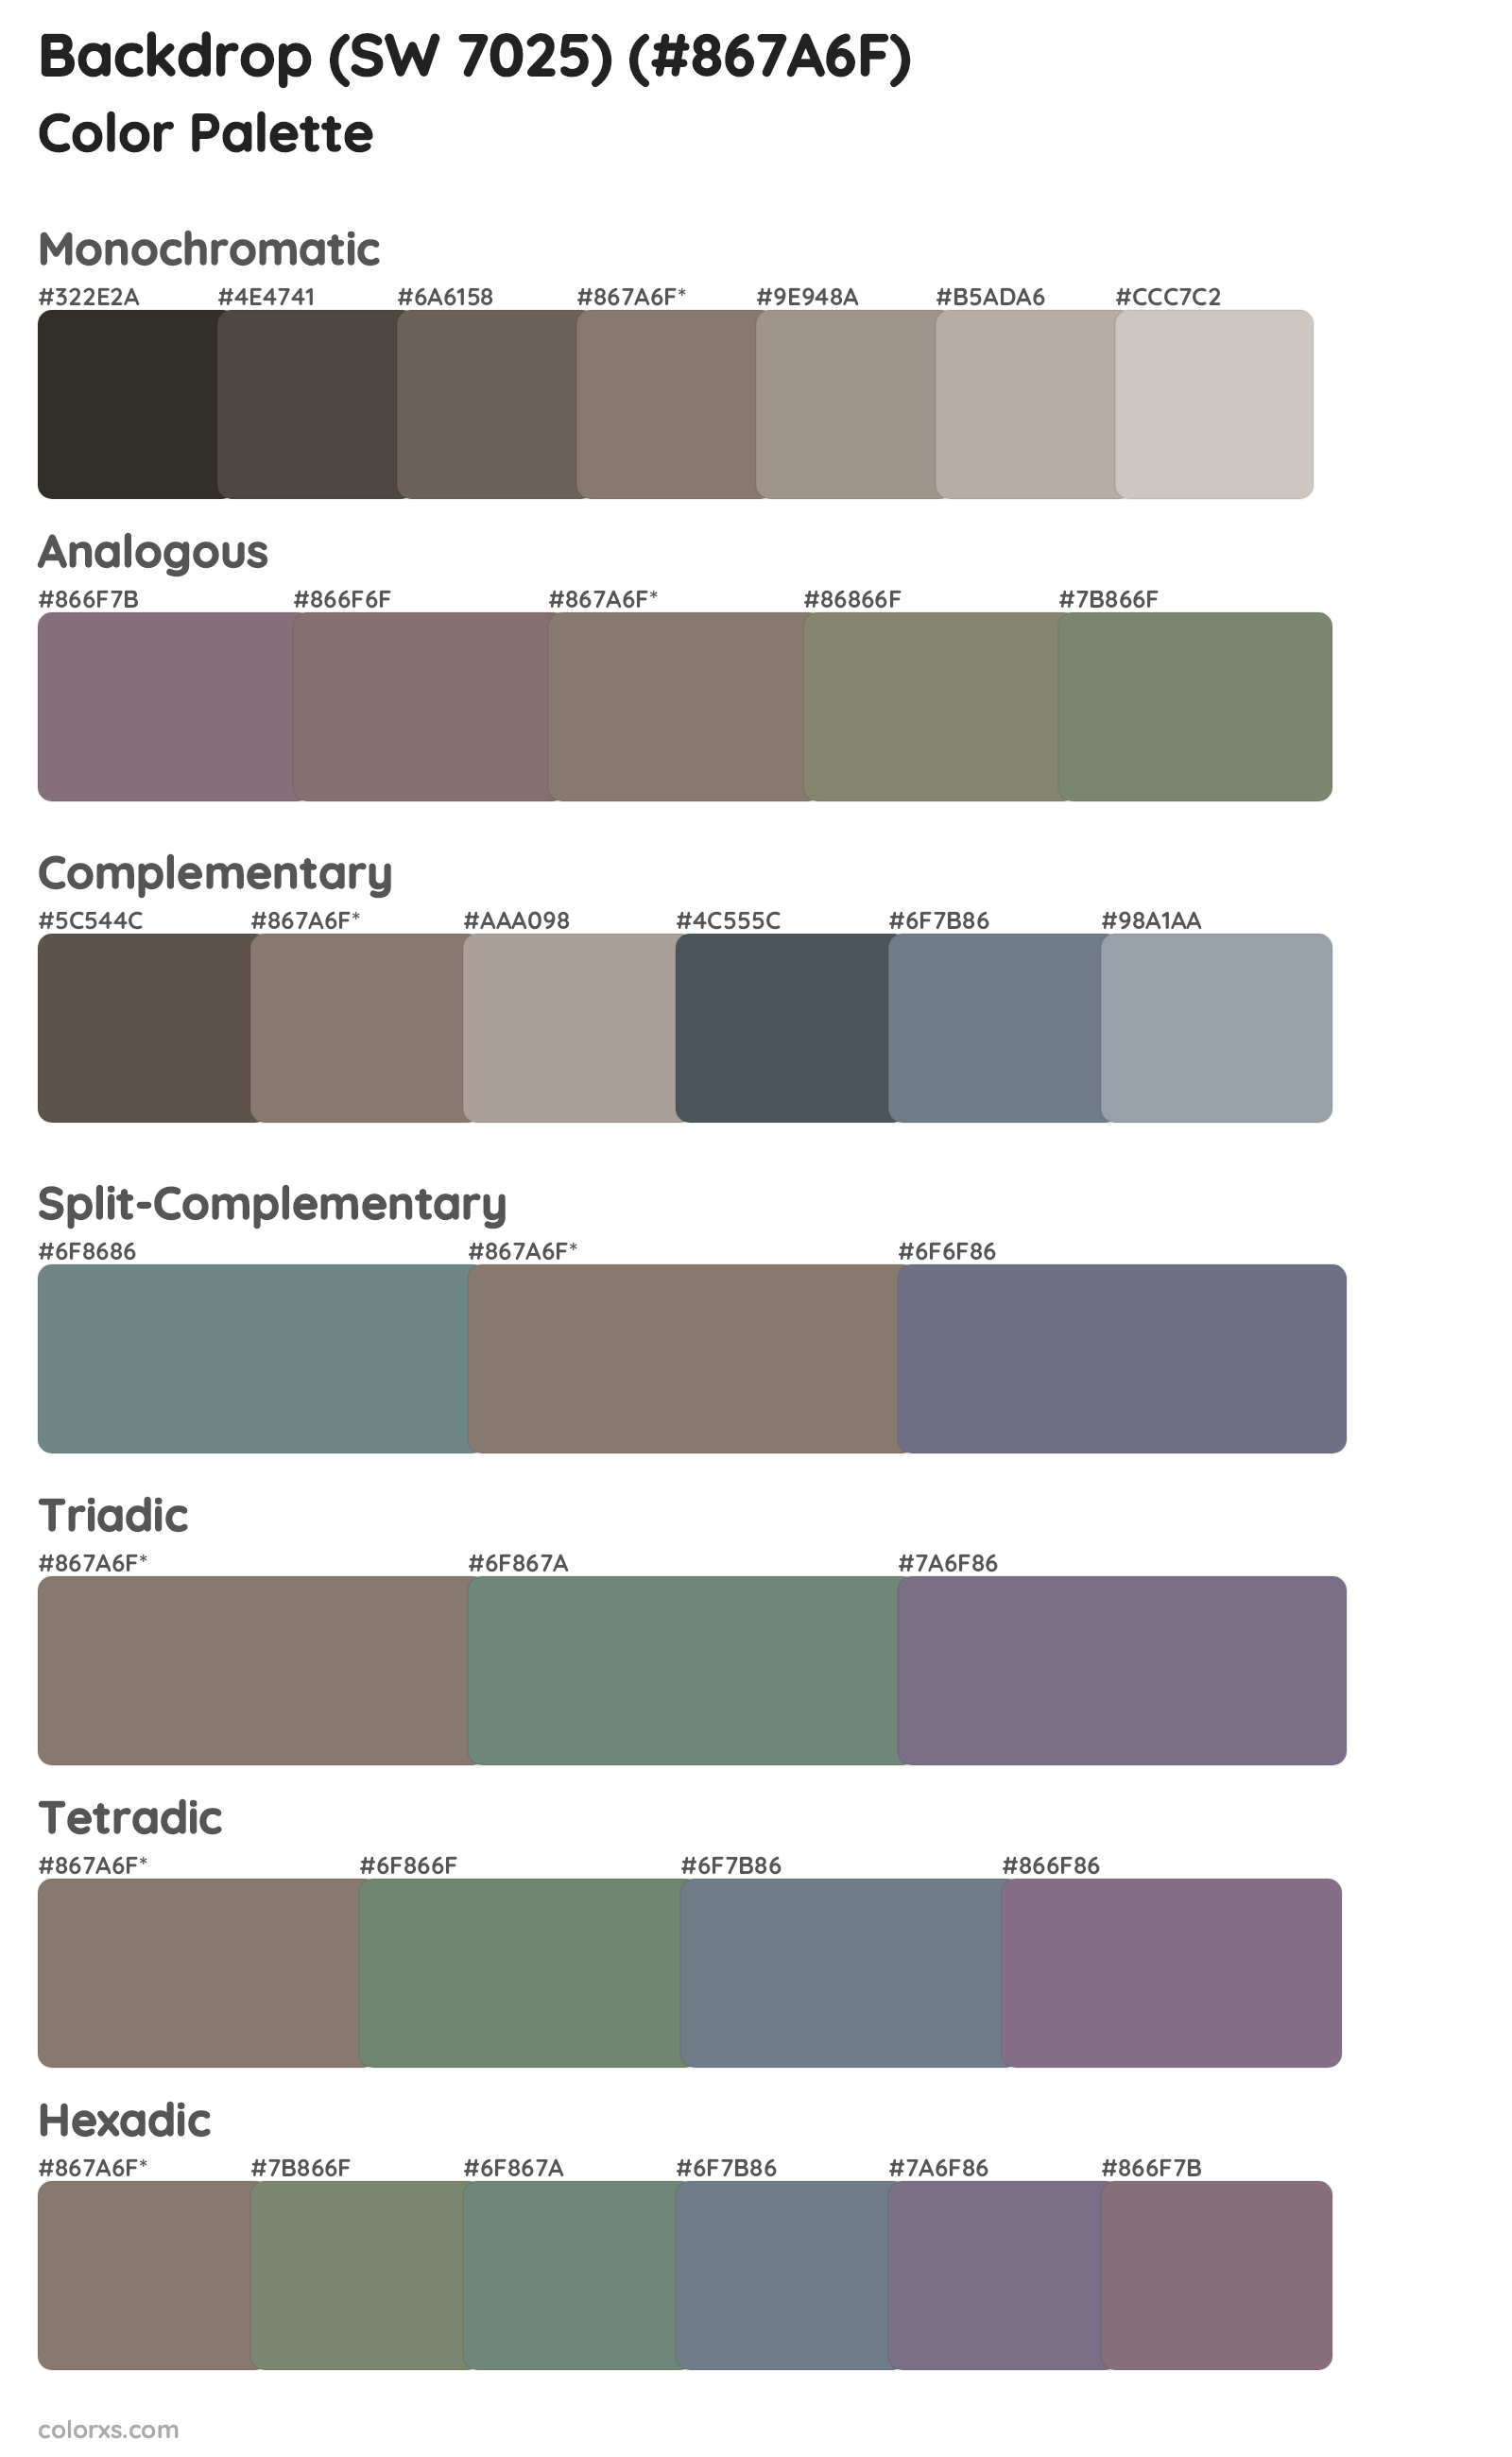 Backdrop (SW 7025) Color Scheme Palettes